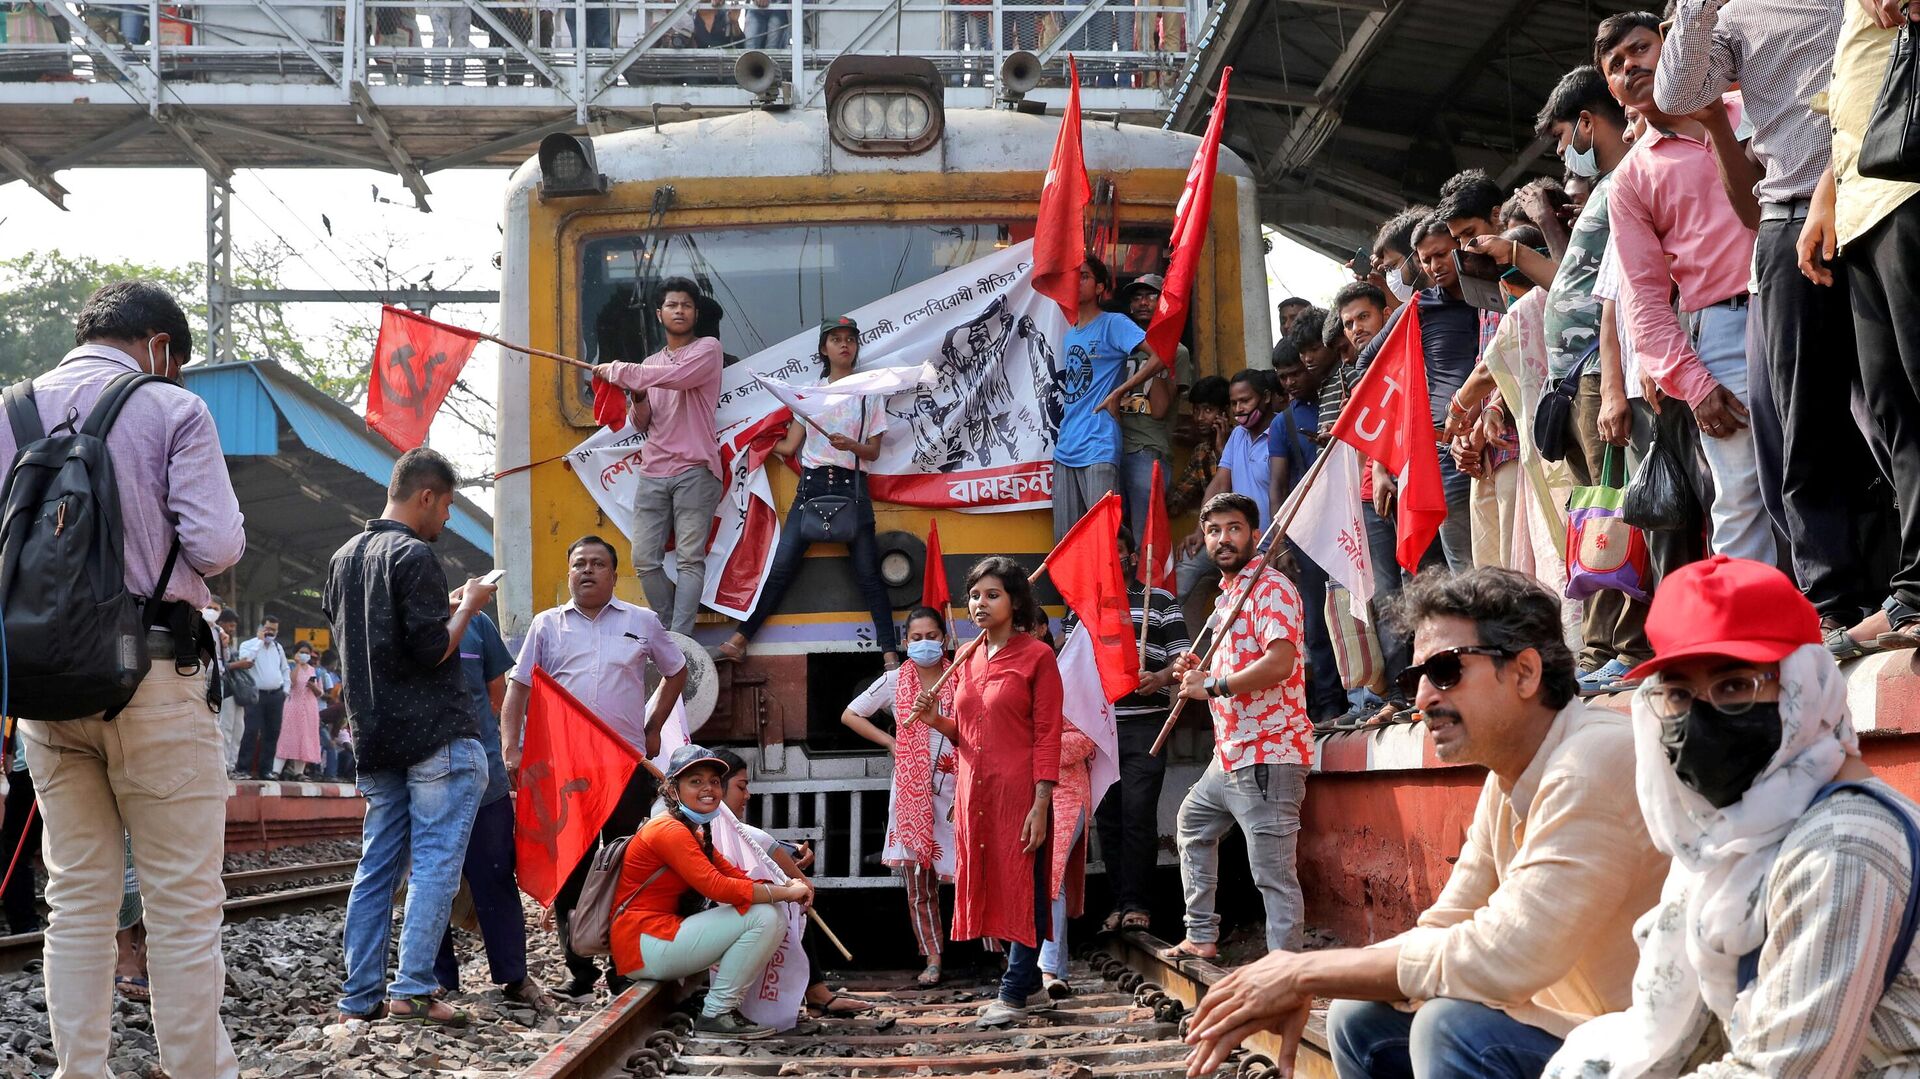 Демонстранты блокируют пассажирский поезд во время двухдневной забастовки в знак протеста против так называемой антинародной политики центрального правительства в Калькутте, Индия, 28 марта 2022 года - Sputnik Беларусь, 1920, 28.03.2022